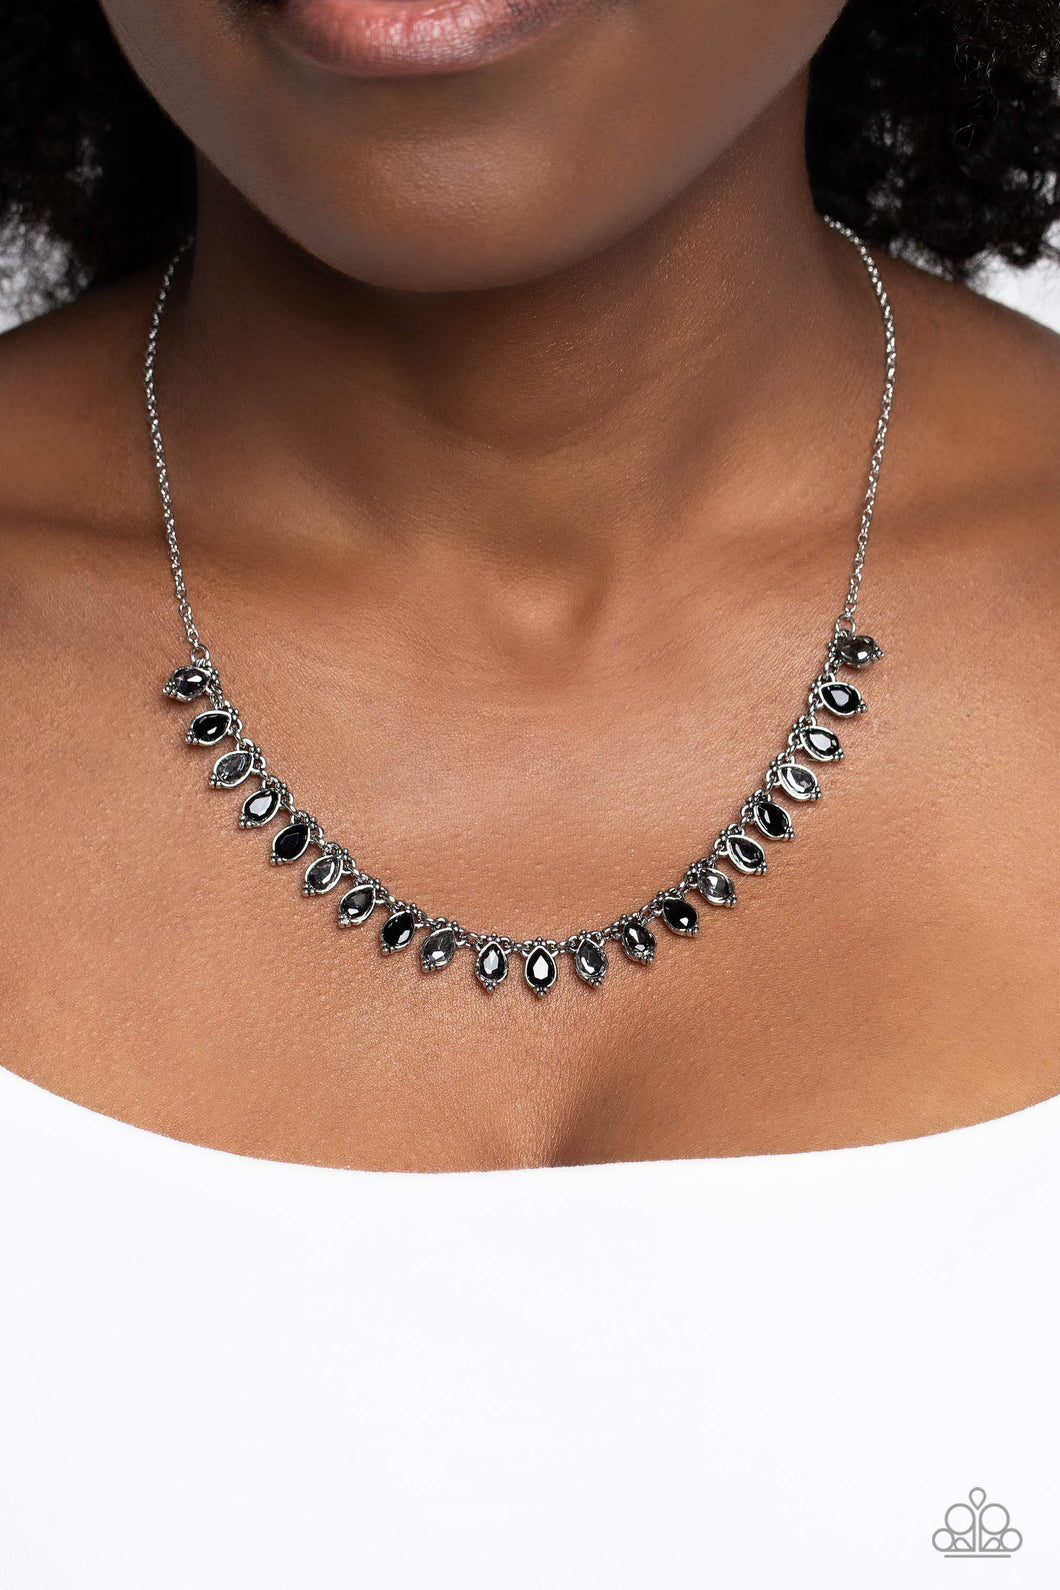 Paparazzi “Fairy Light” Fashion Black Necklace Earring Set - Cindysblingboutique